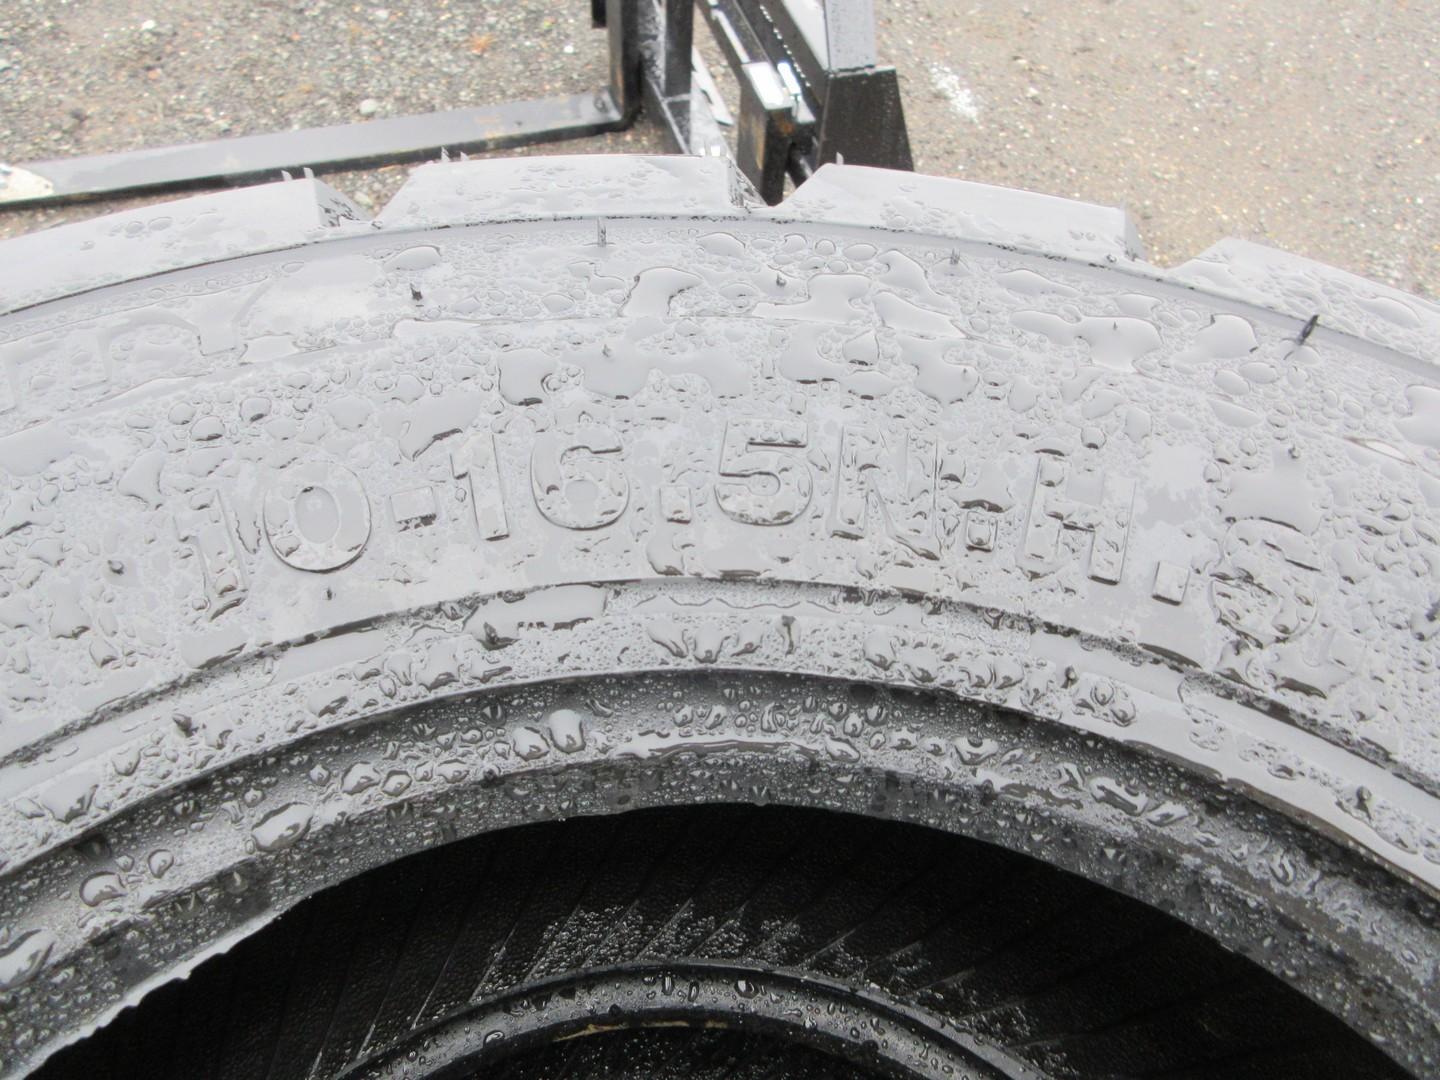 (4) Forerunner 10-16.5 Tires